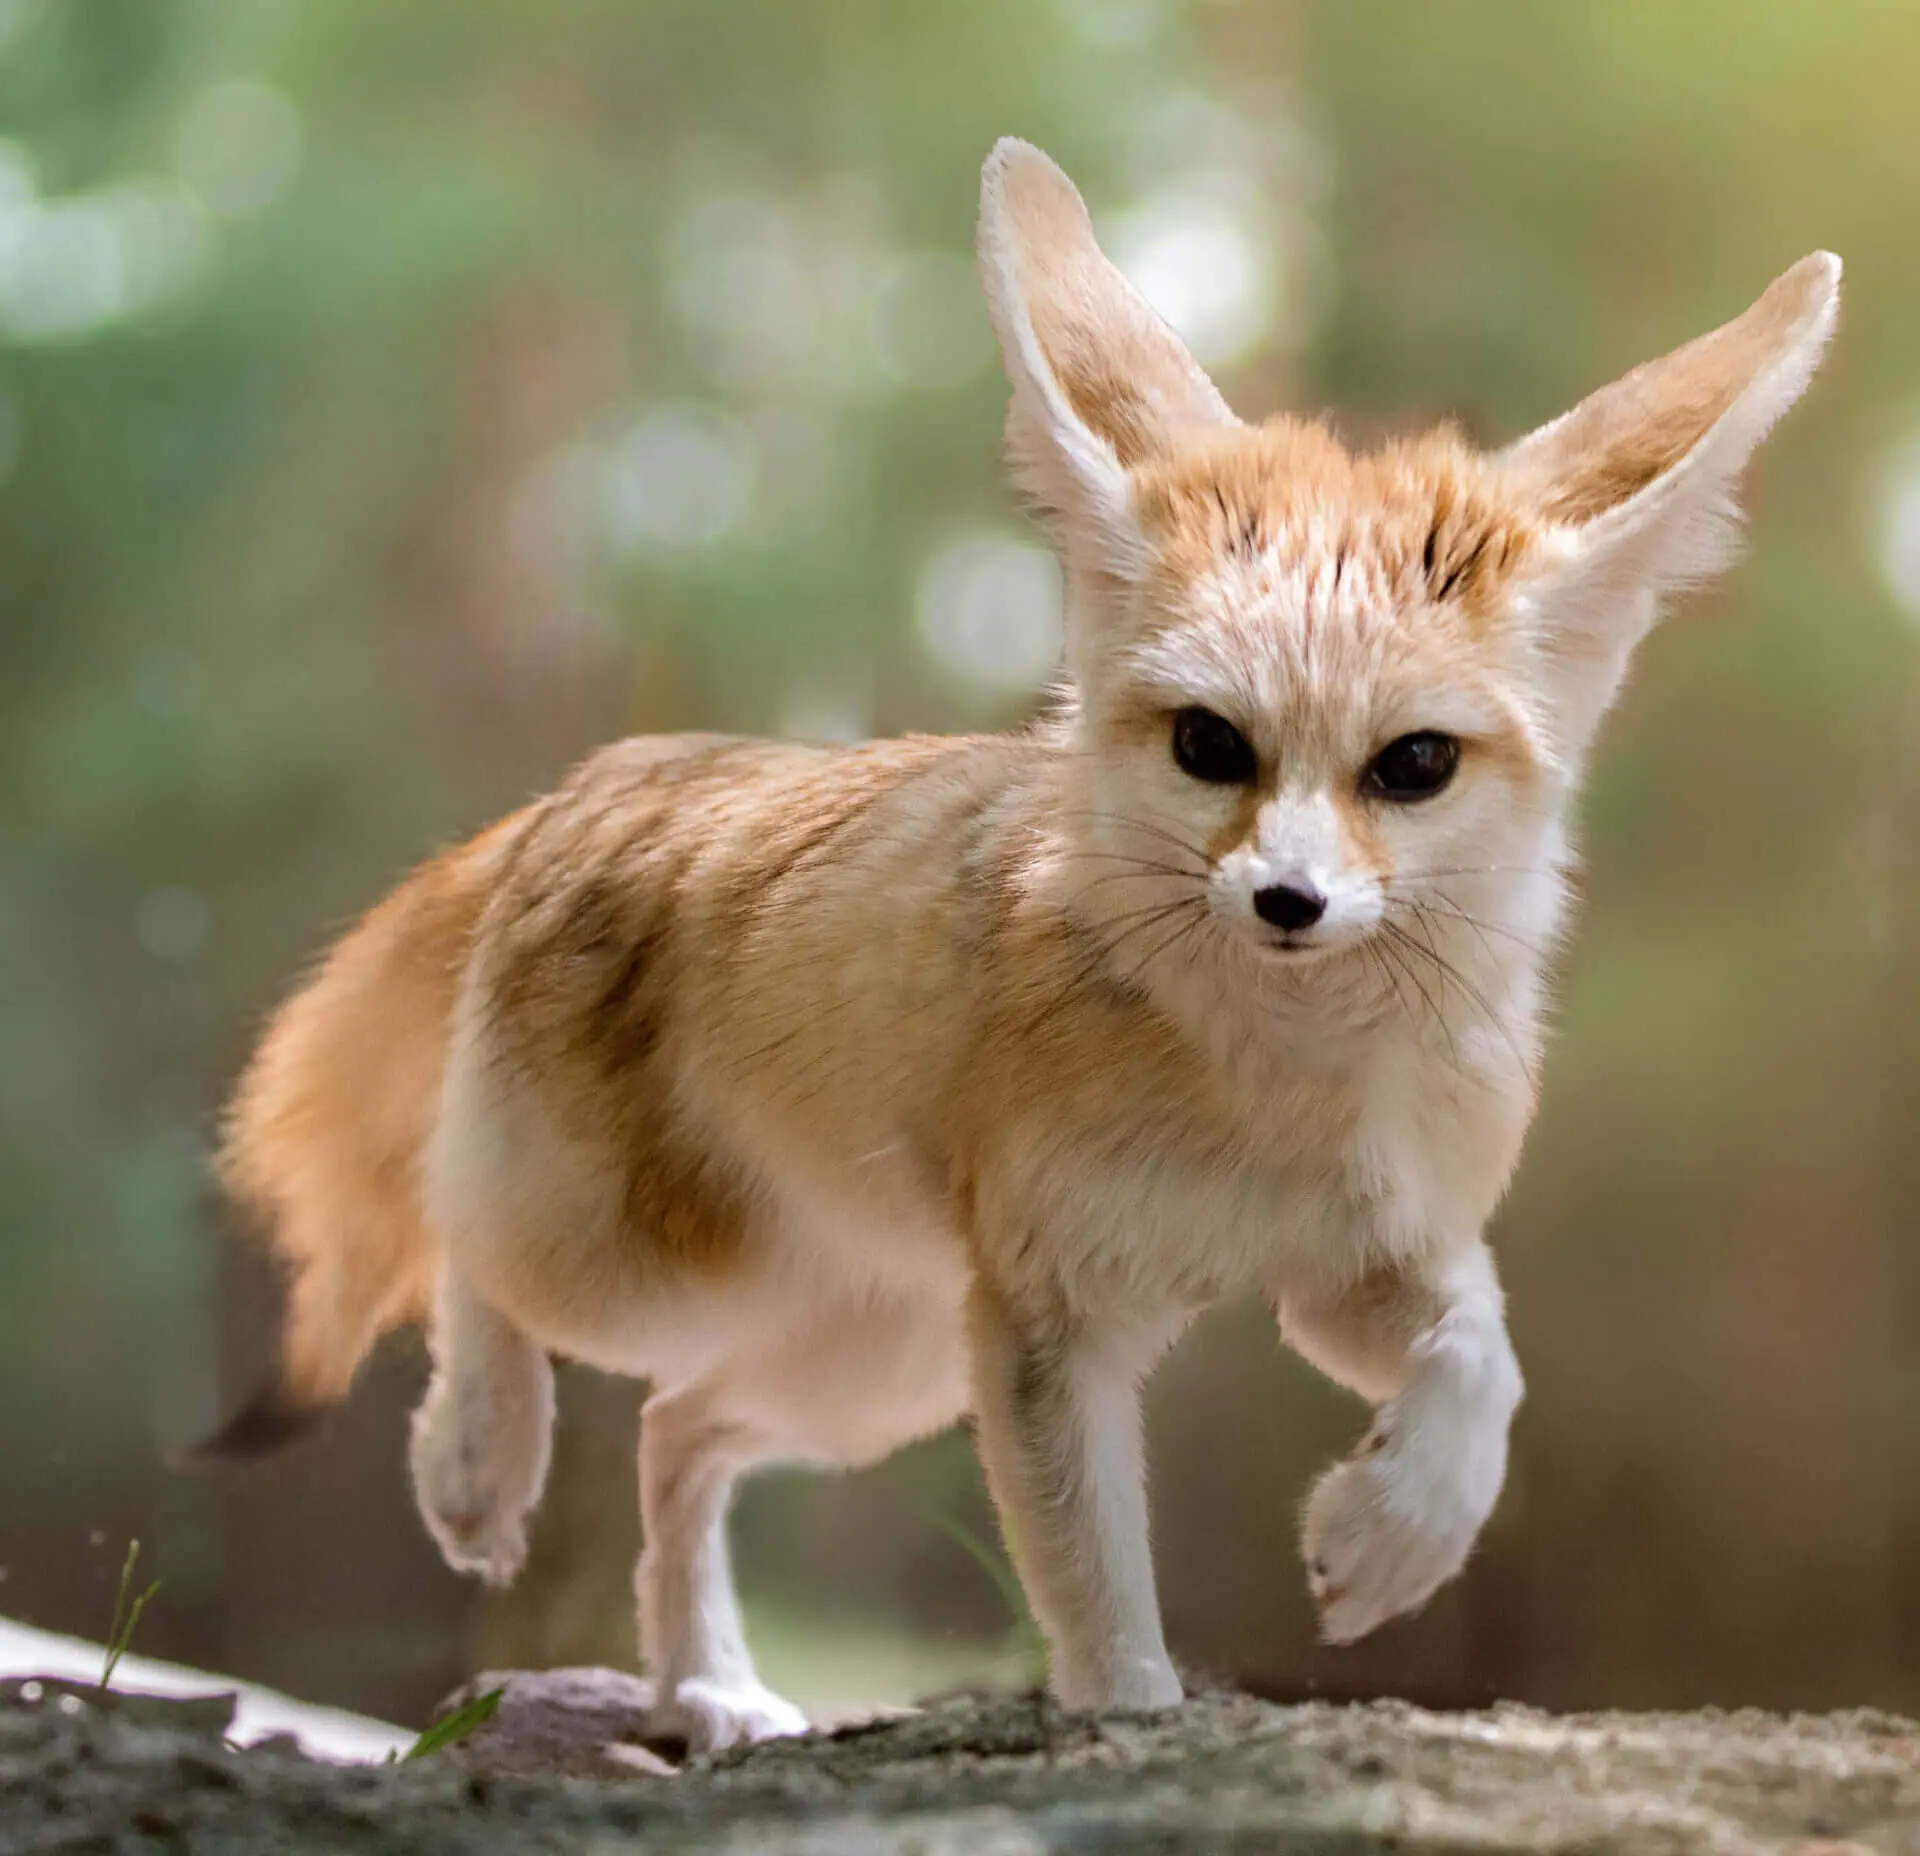 Fennec fox - Wikipedia